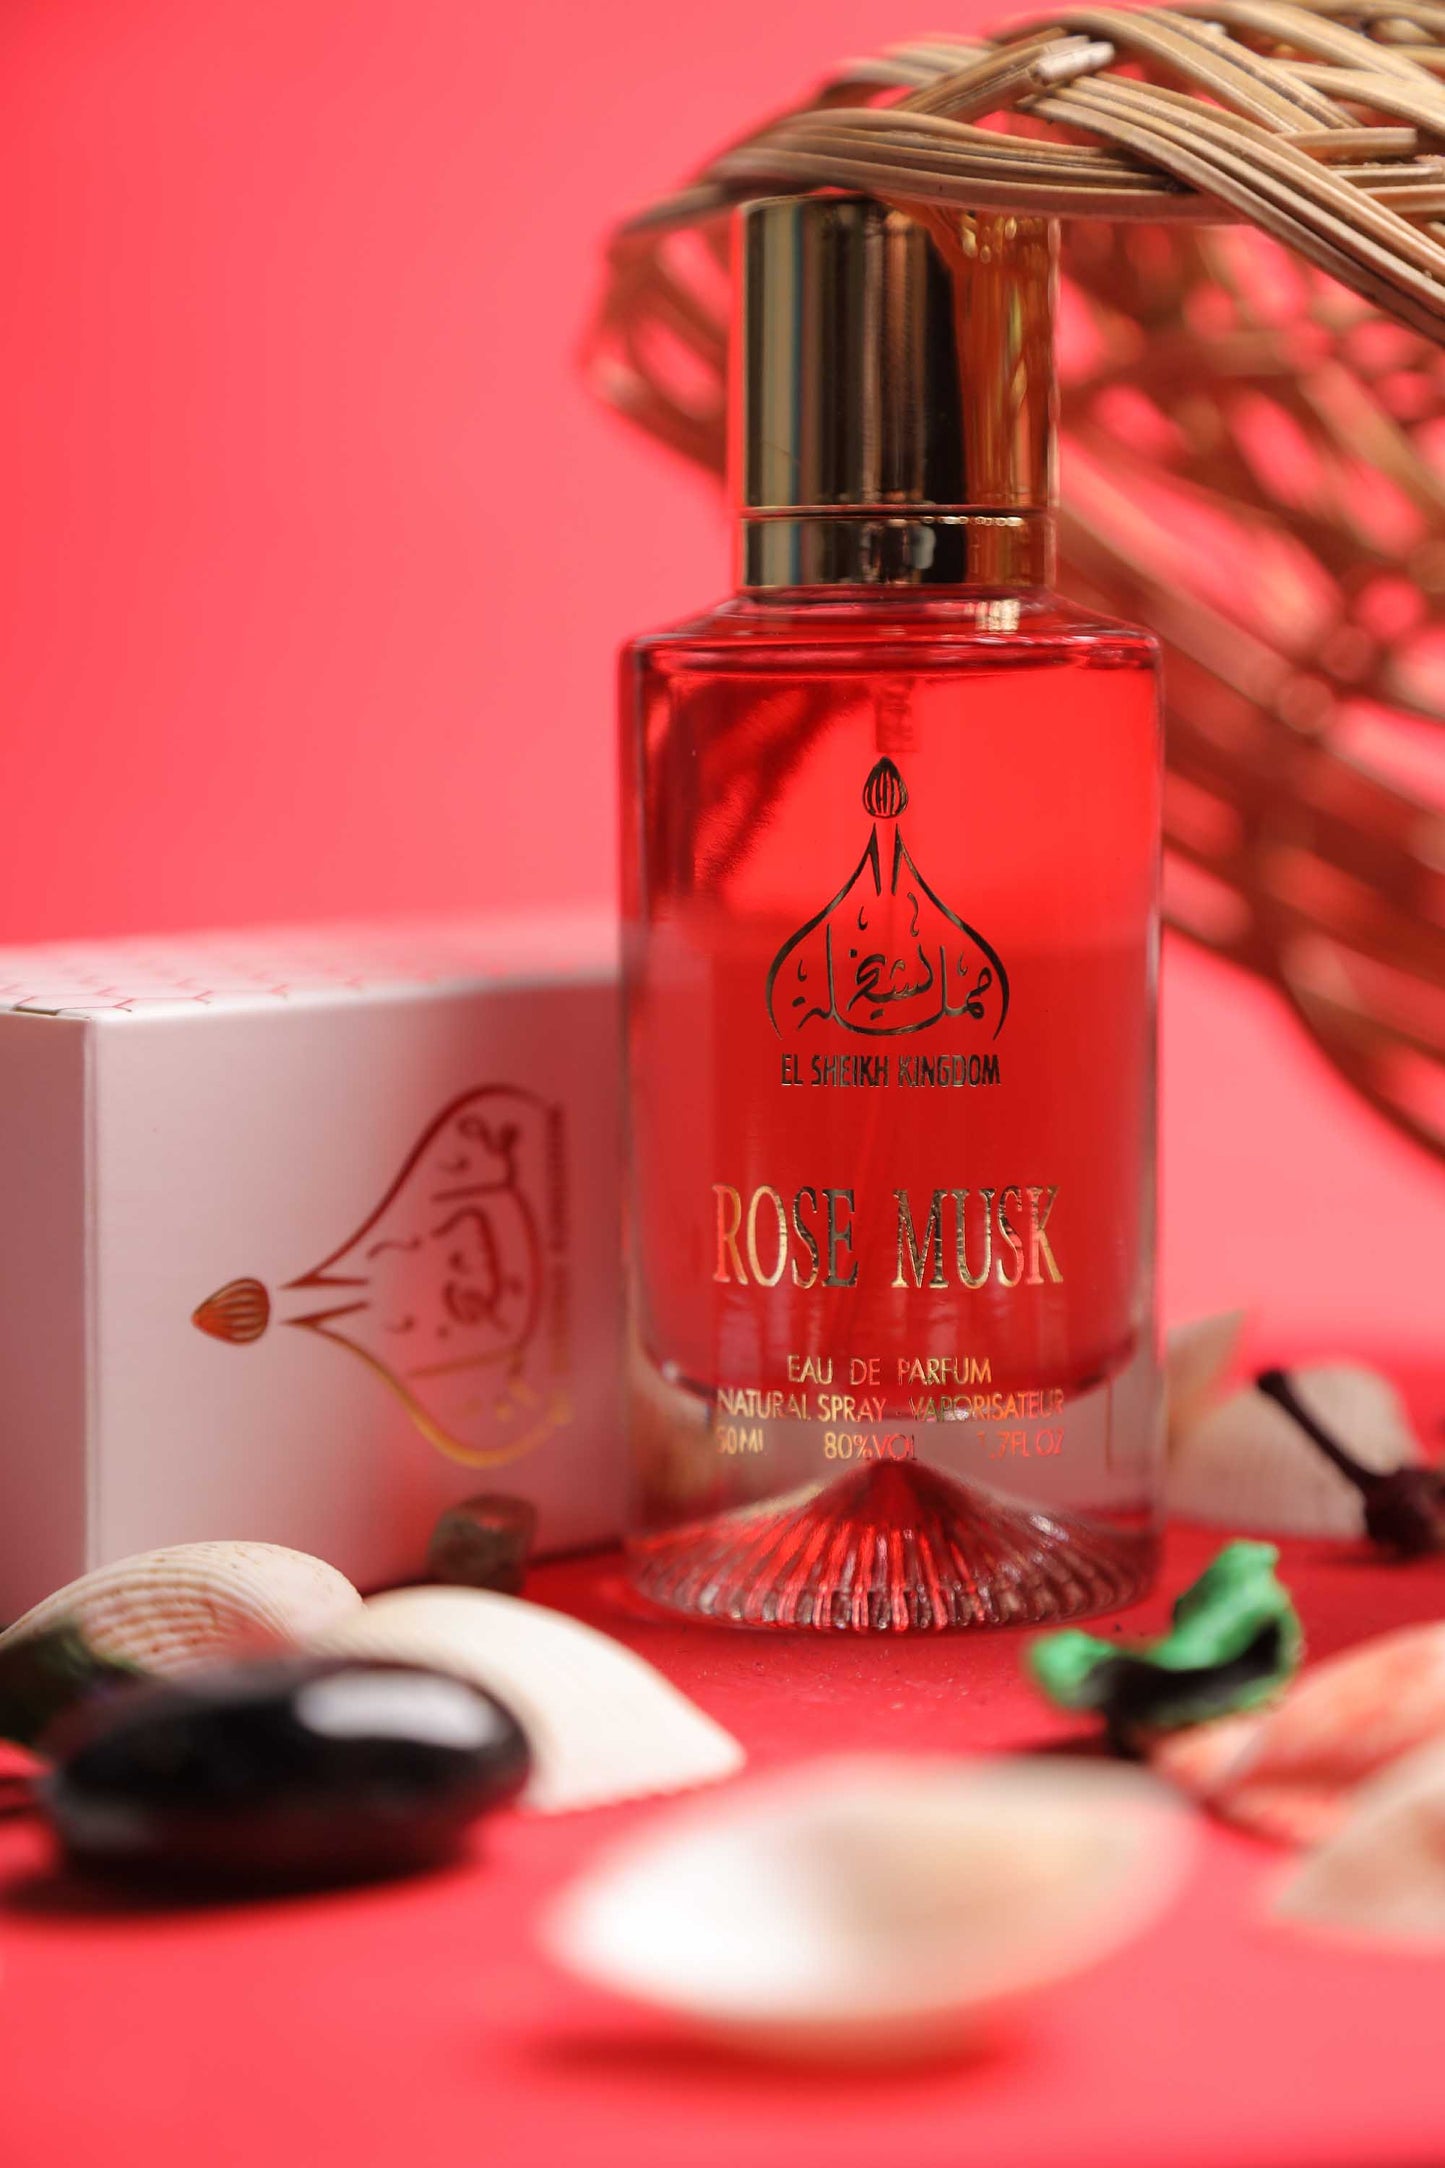 Rose Musk Perfume